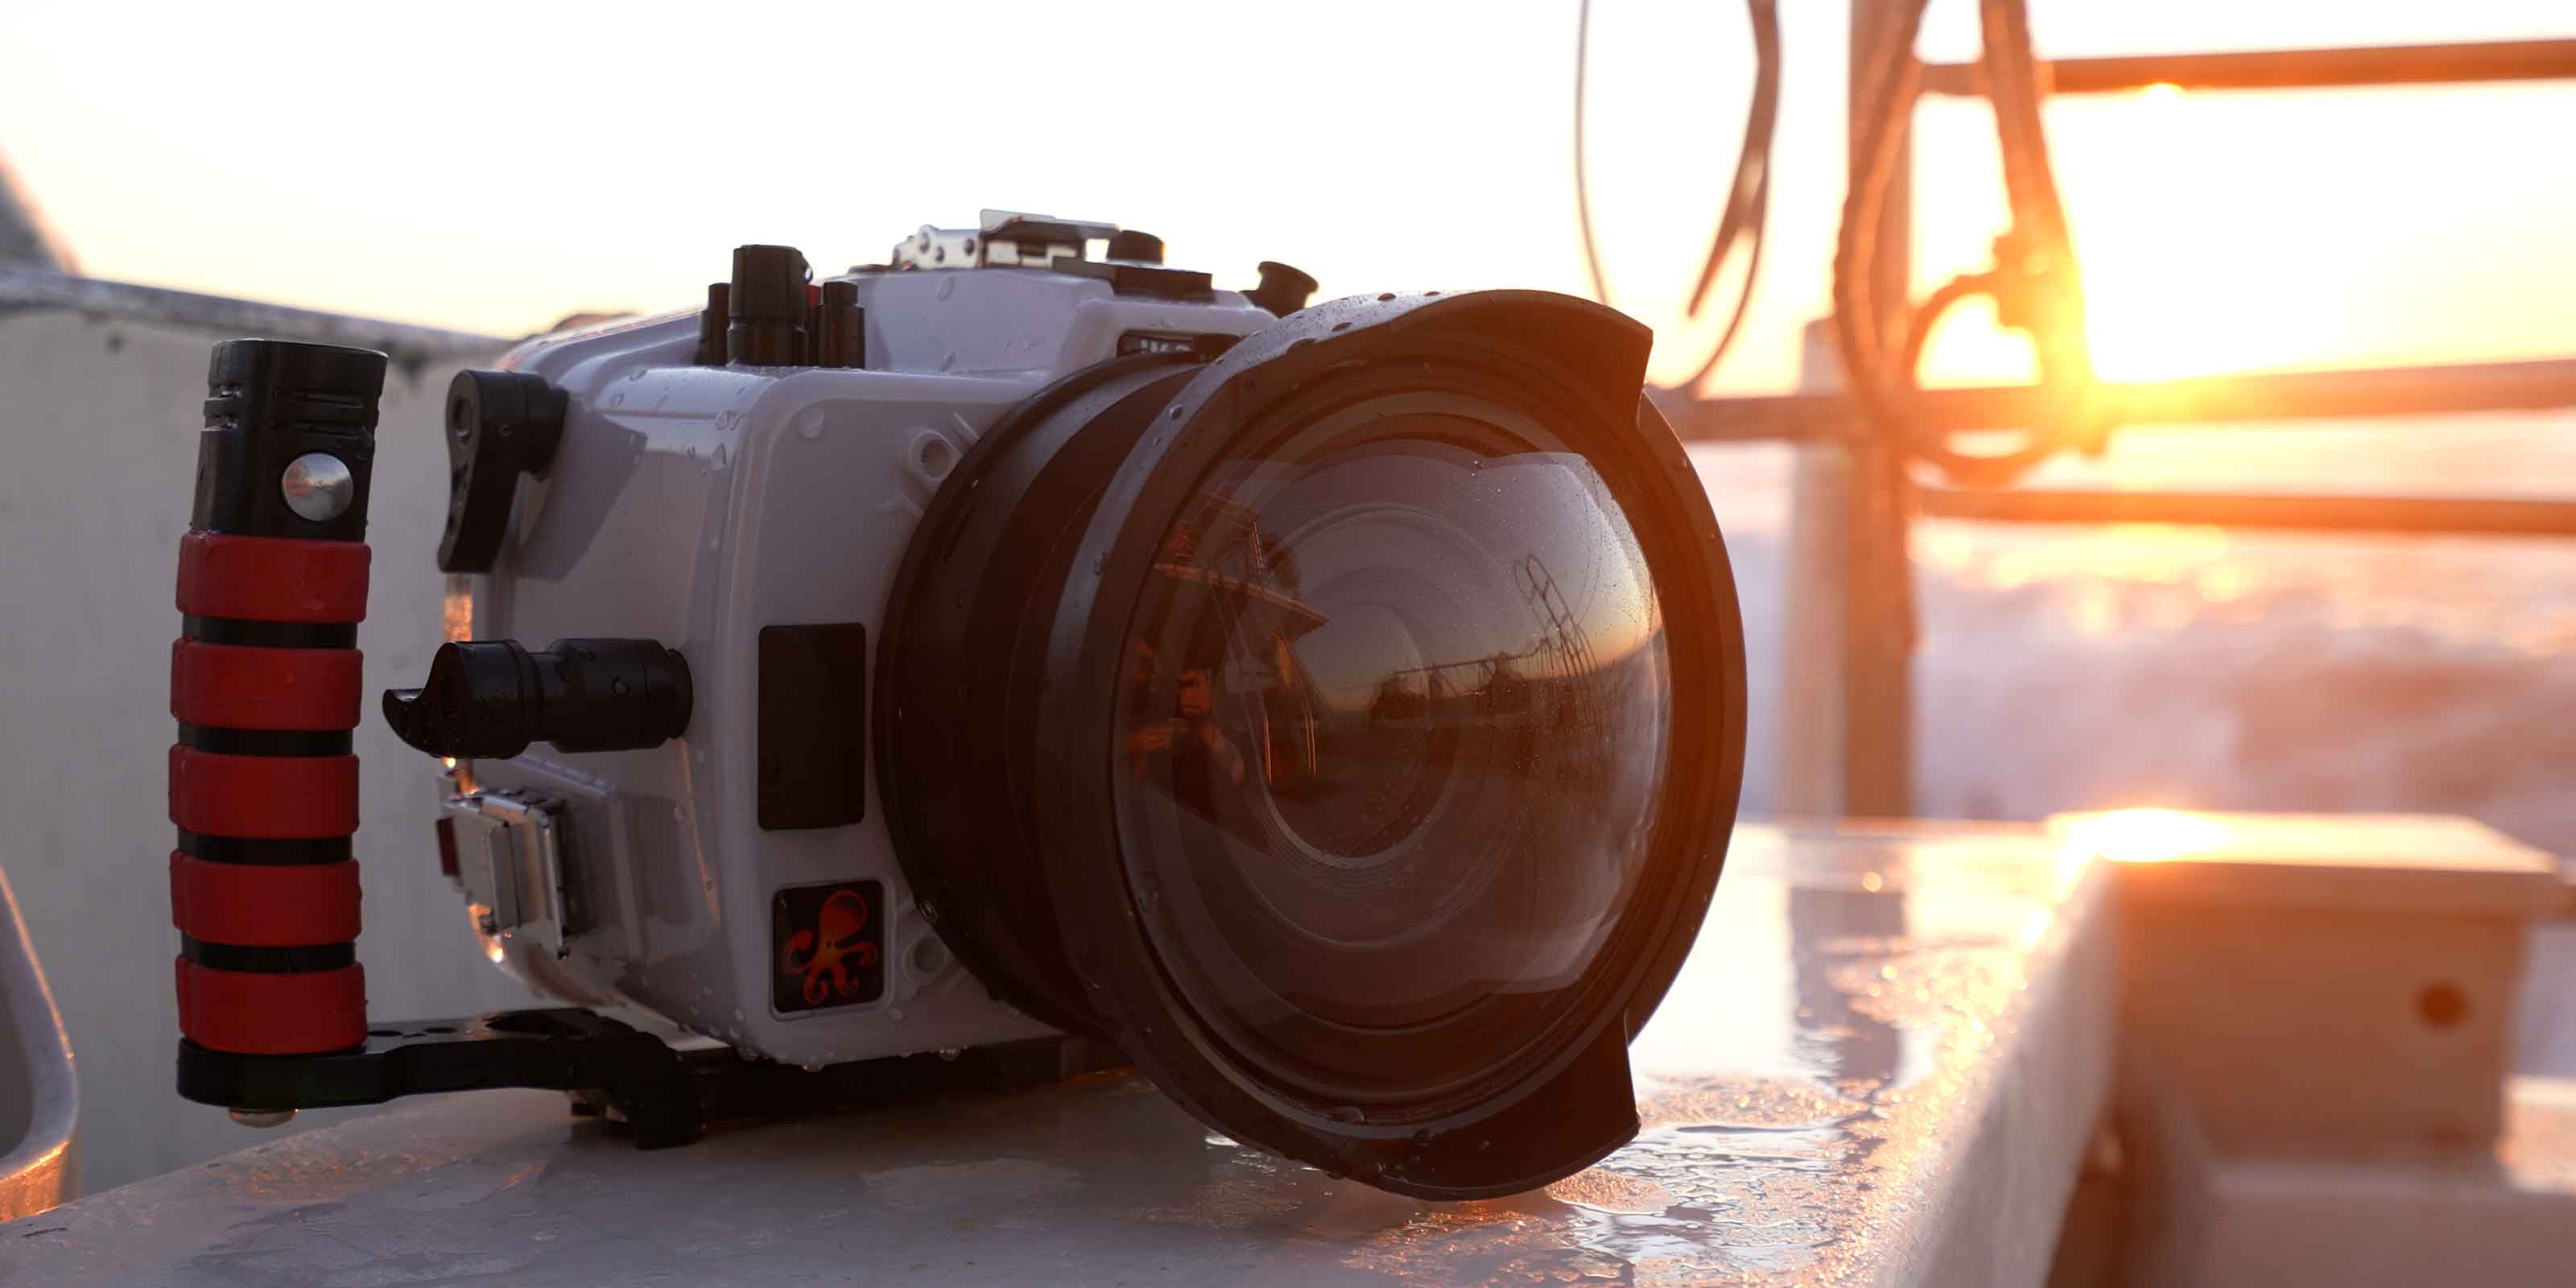 200DL Underwater Housing for Nikon Z50 Mirrorless Digital Cameras